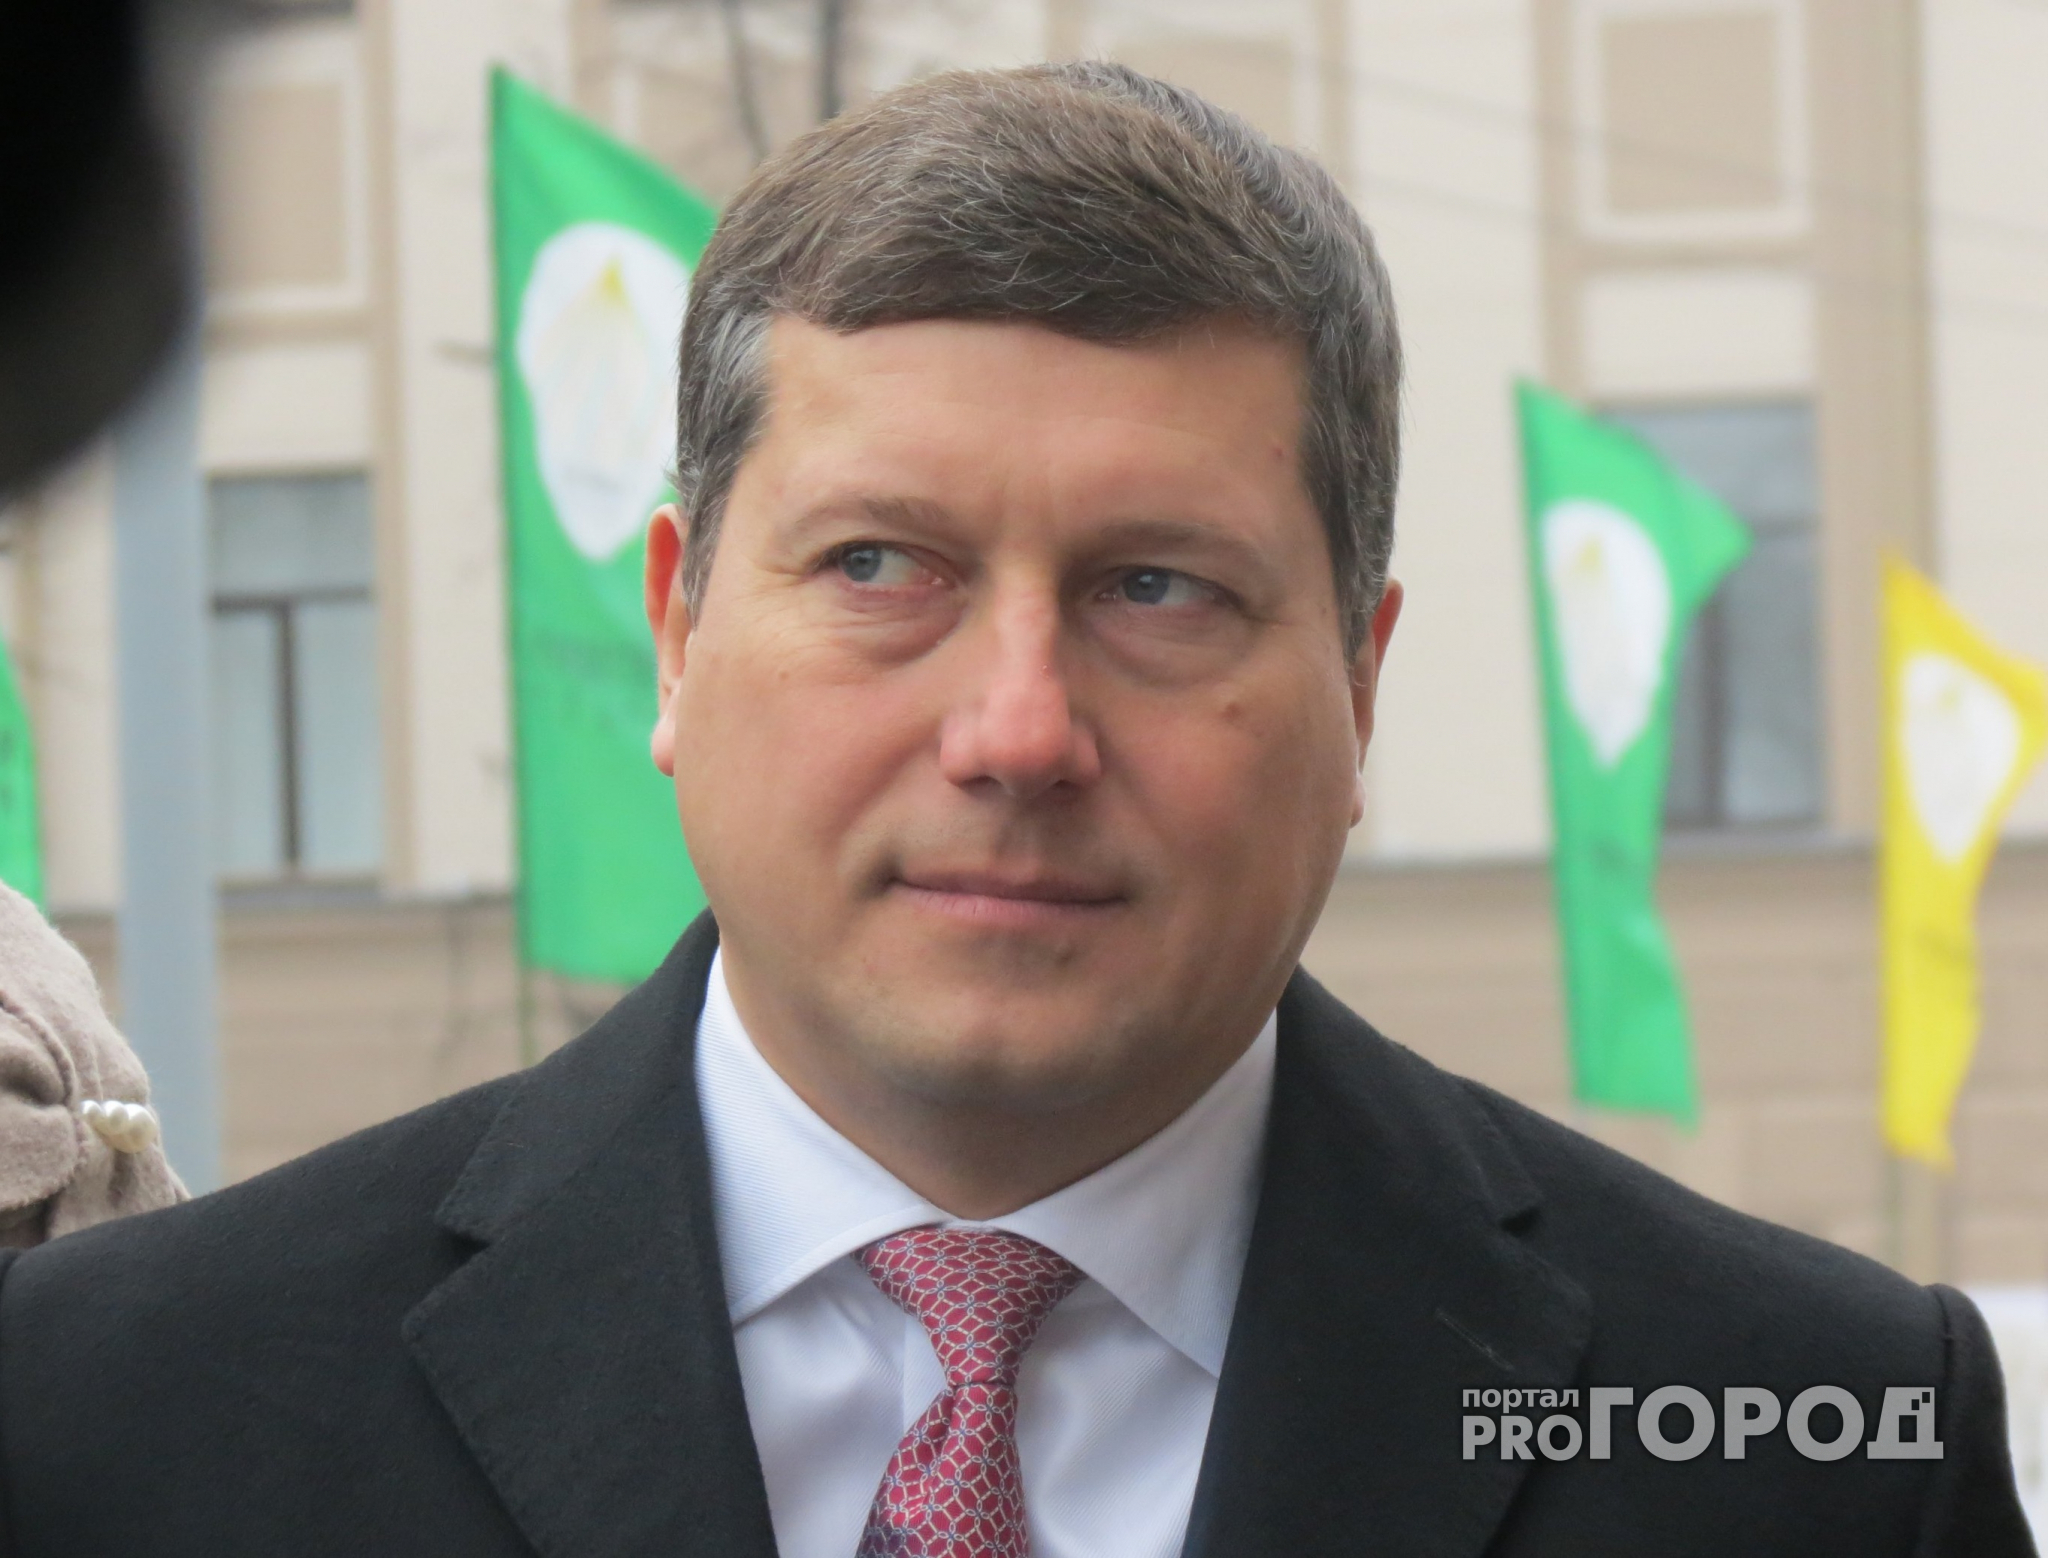 Экс-мэру Нижнего Новгорода Олегу Сорокину продлили срок содержания под стражей